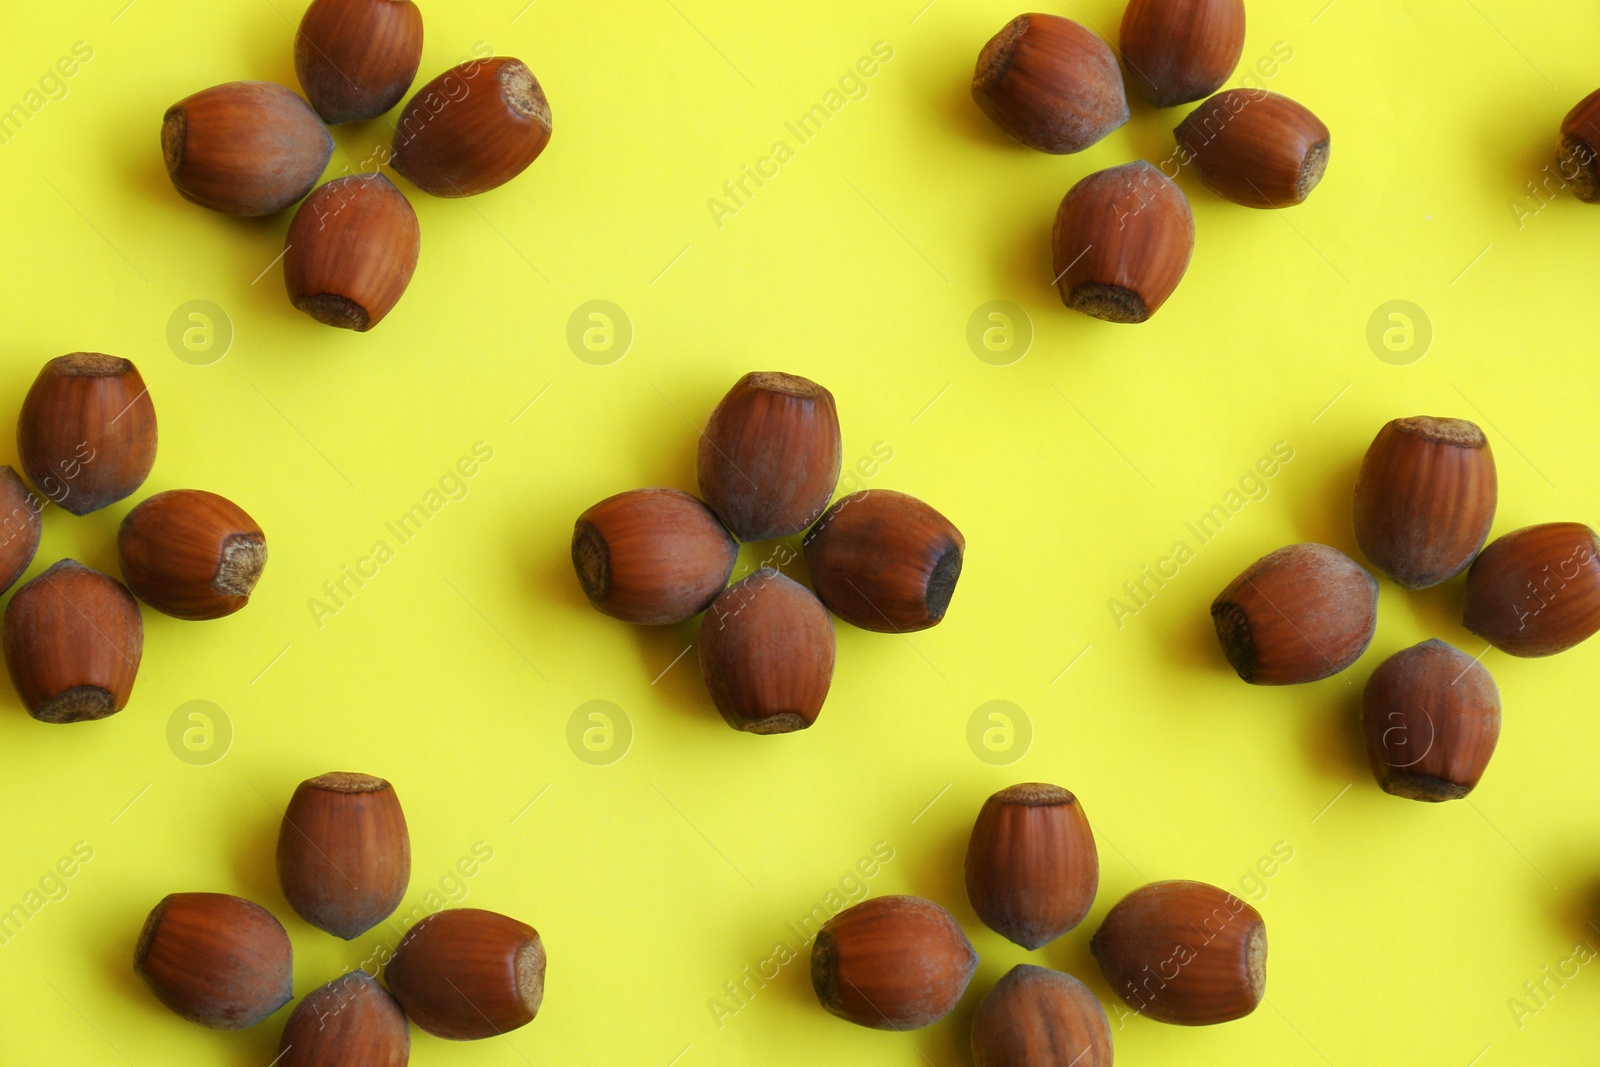 Photo of Pattern of hazelnuts on yellow background, flat lay